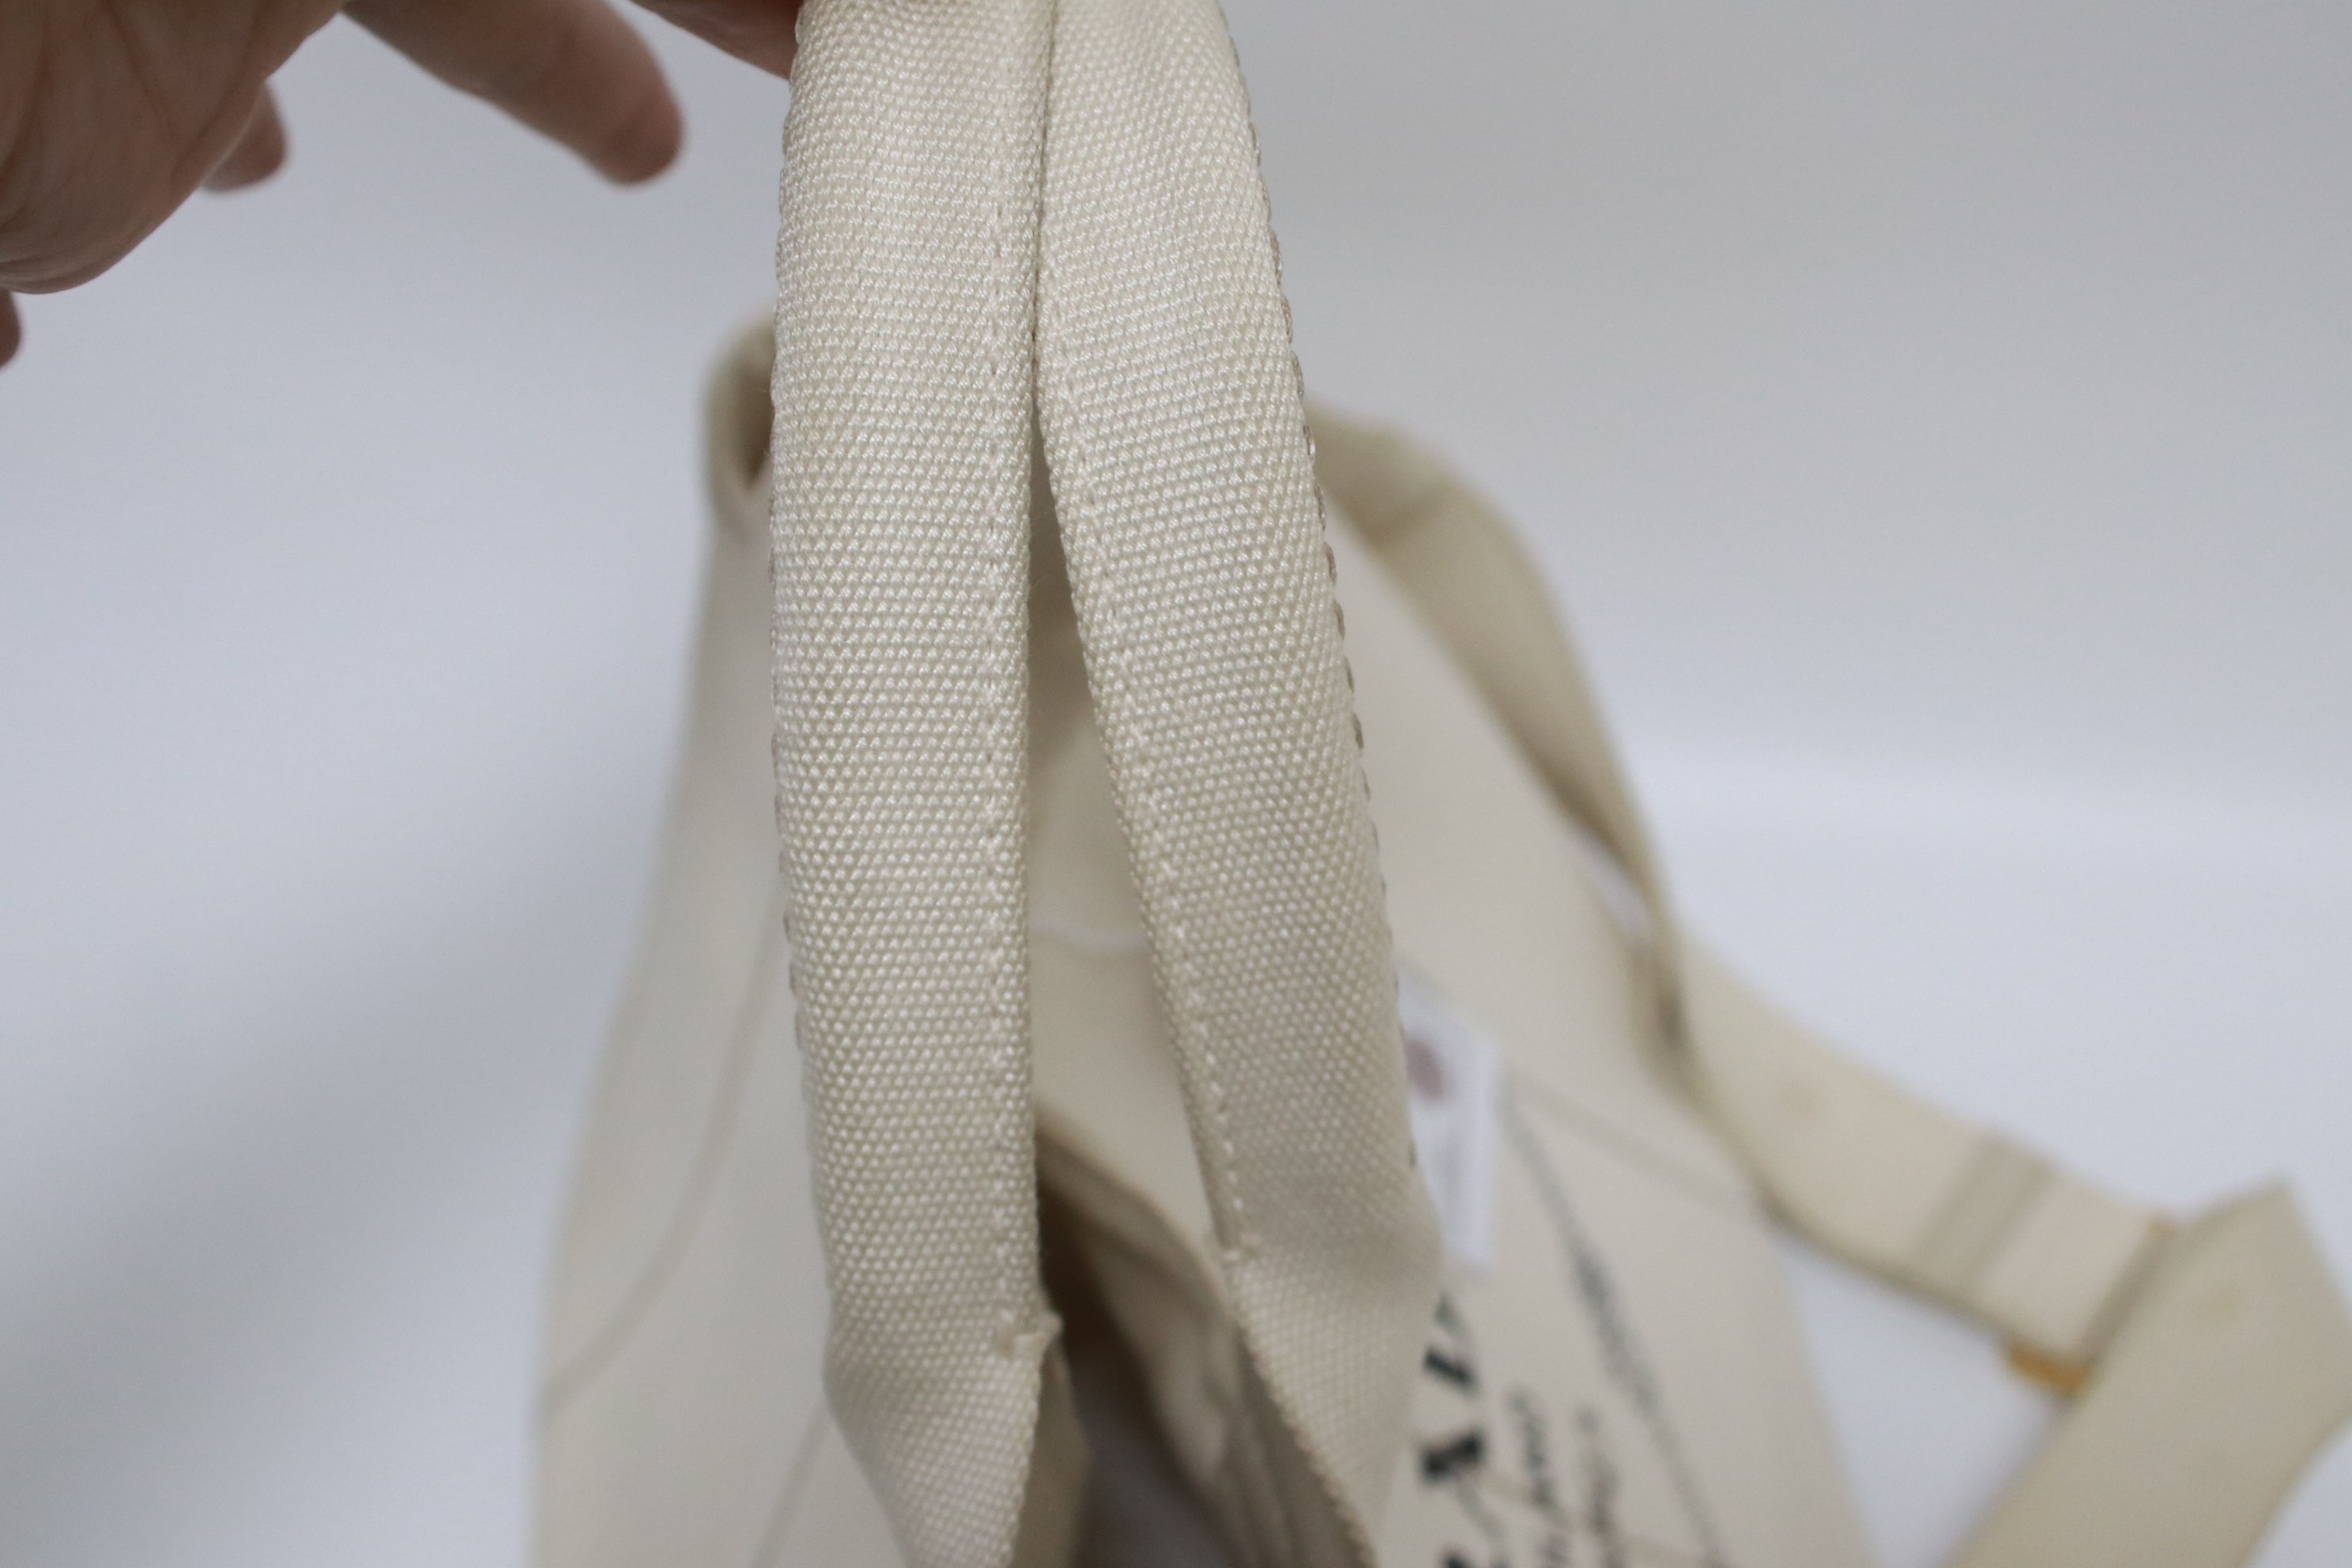 Prada Canapa Shoulder Bag Large Used (6986)